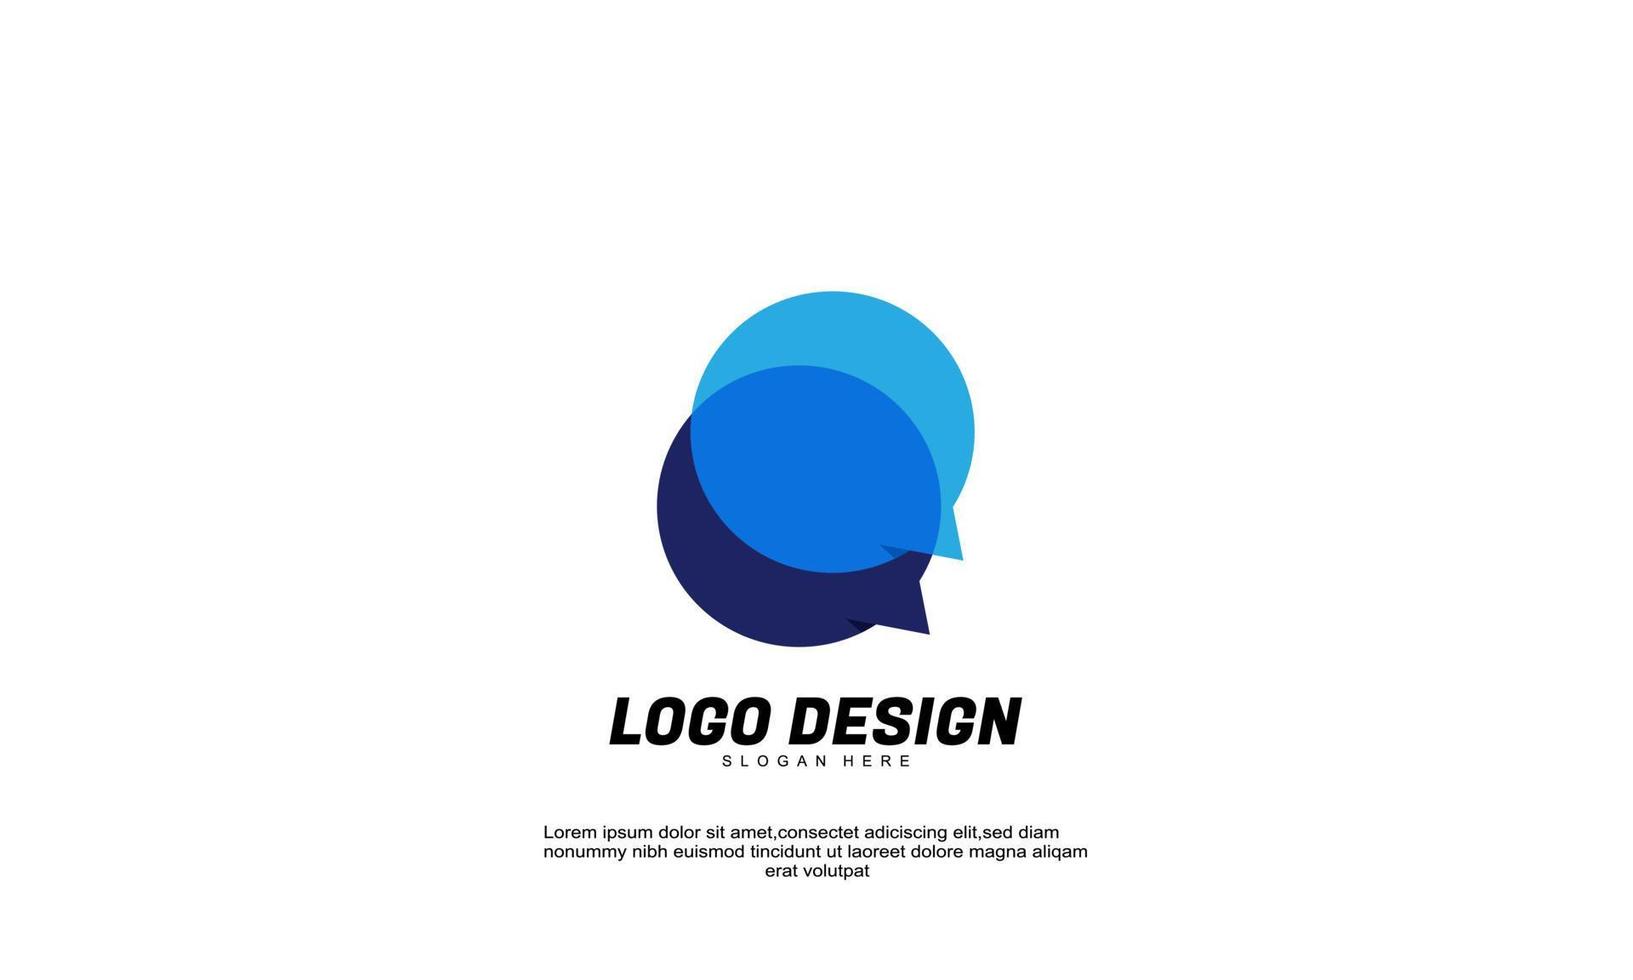 voorraad vector abstracte creatieve inspiratie idee branding chat logo voor bedrijf of bedrijf vlakke stijl ontwerp vector